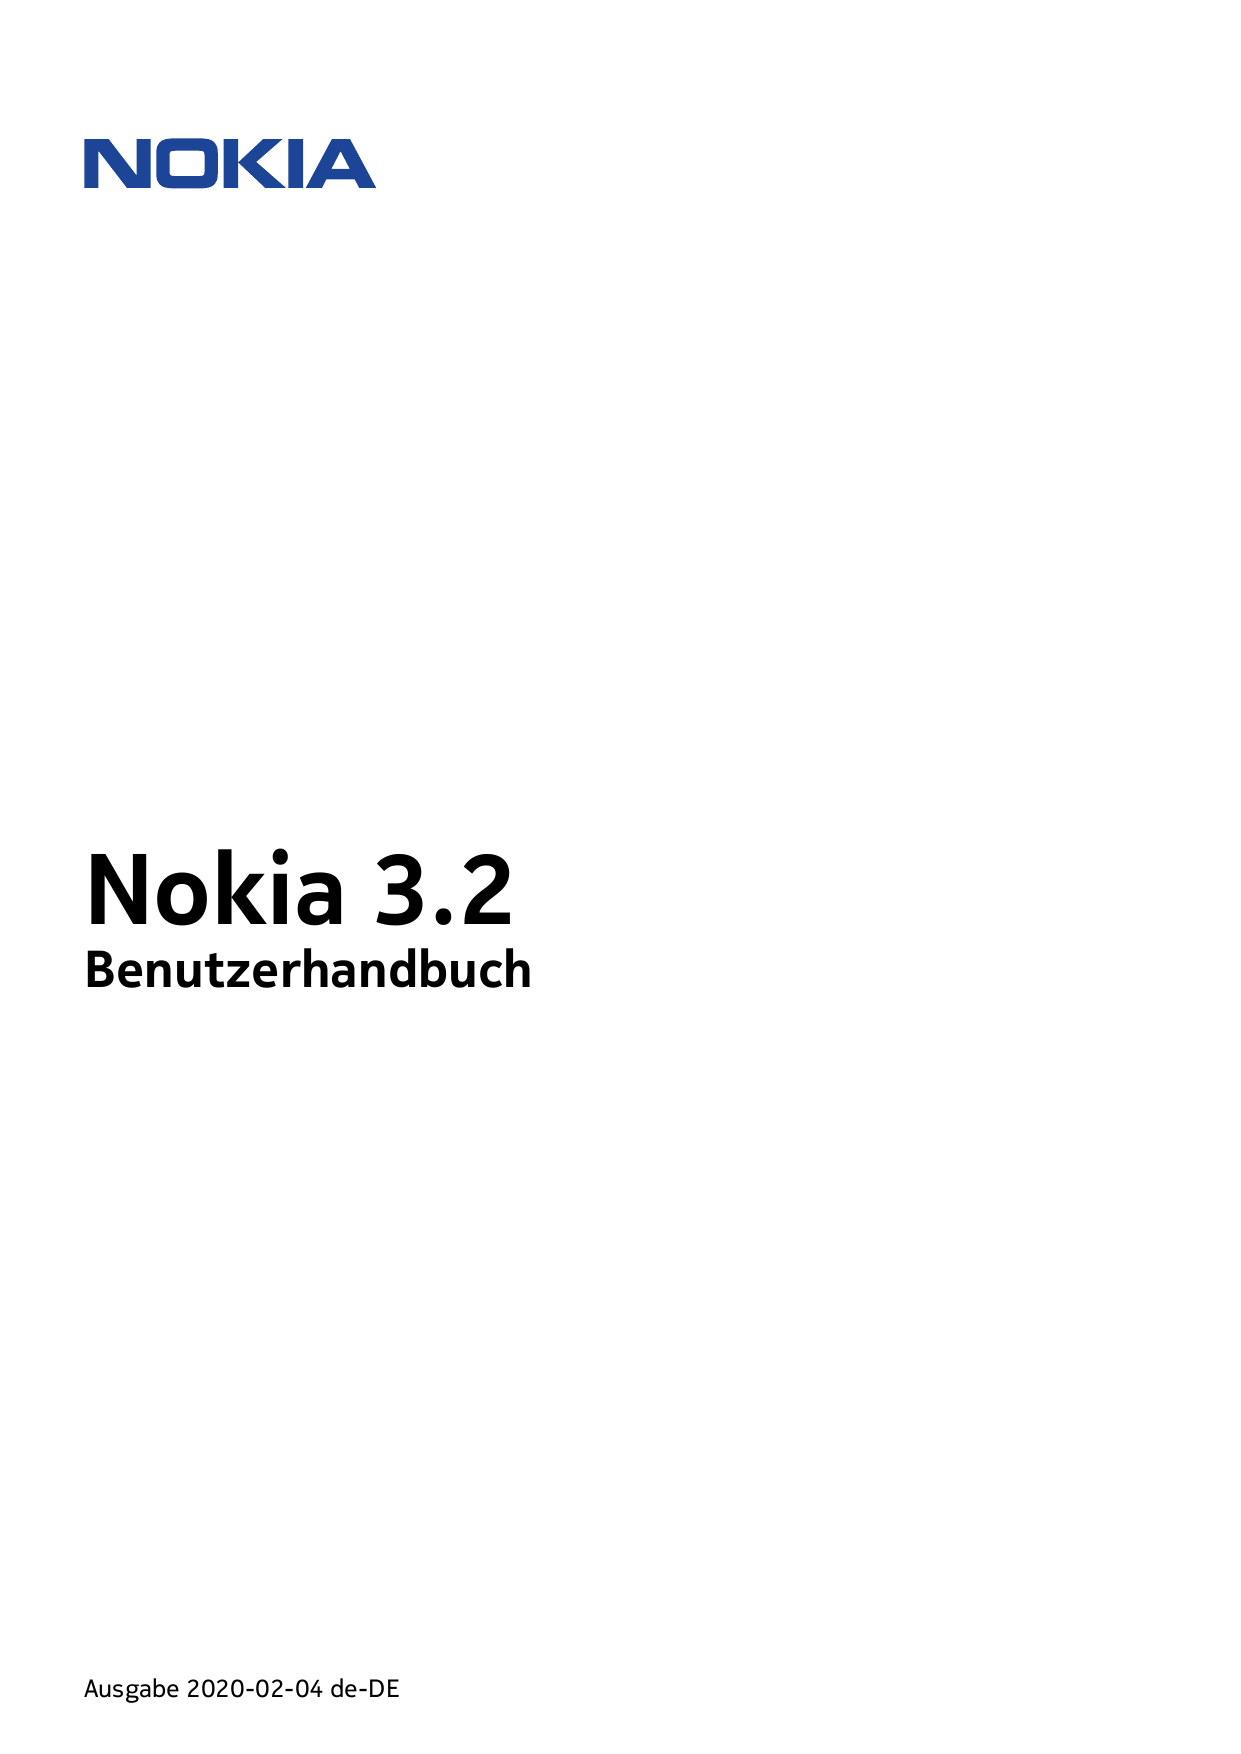 Nokia 3.2BenutzerhandbuchAusgabe 2020-02-04 de-DE